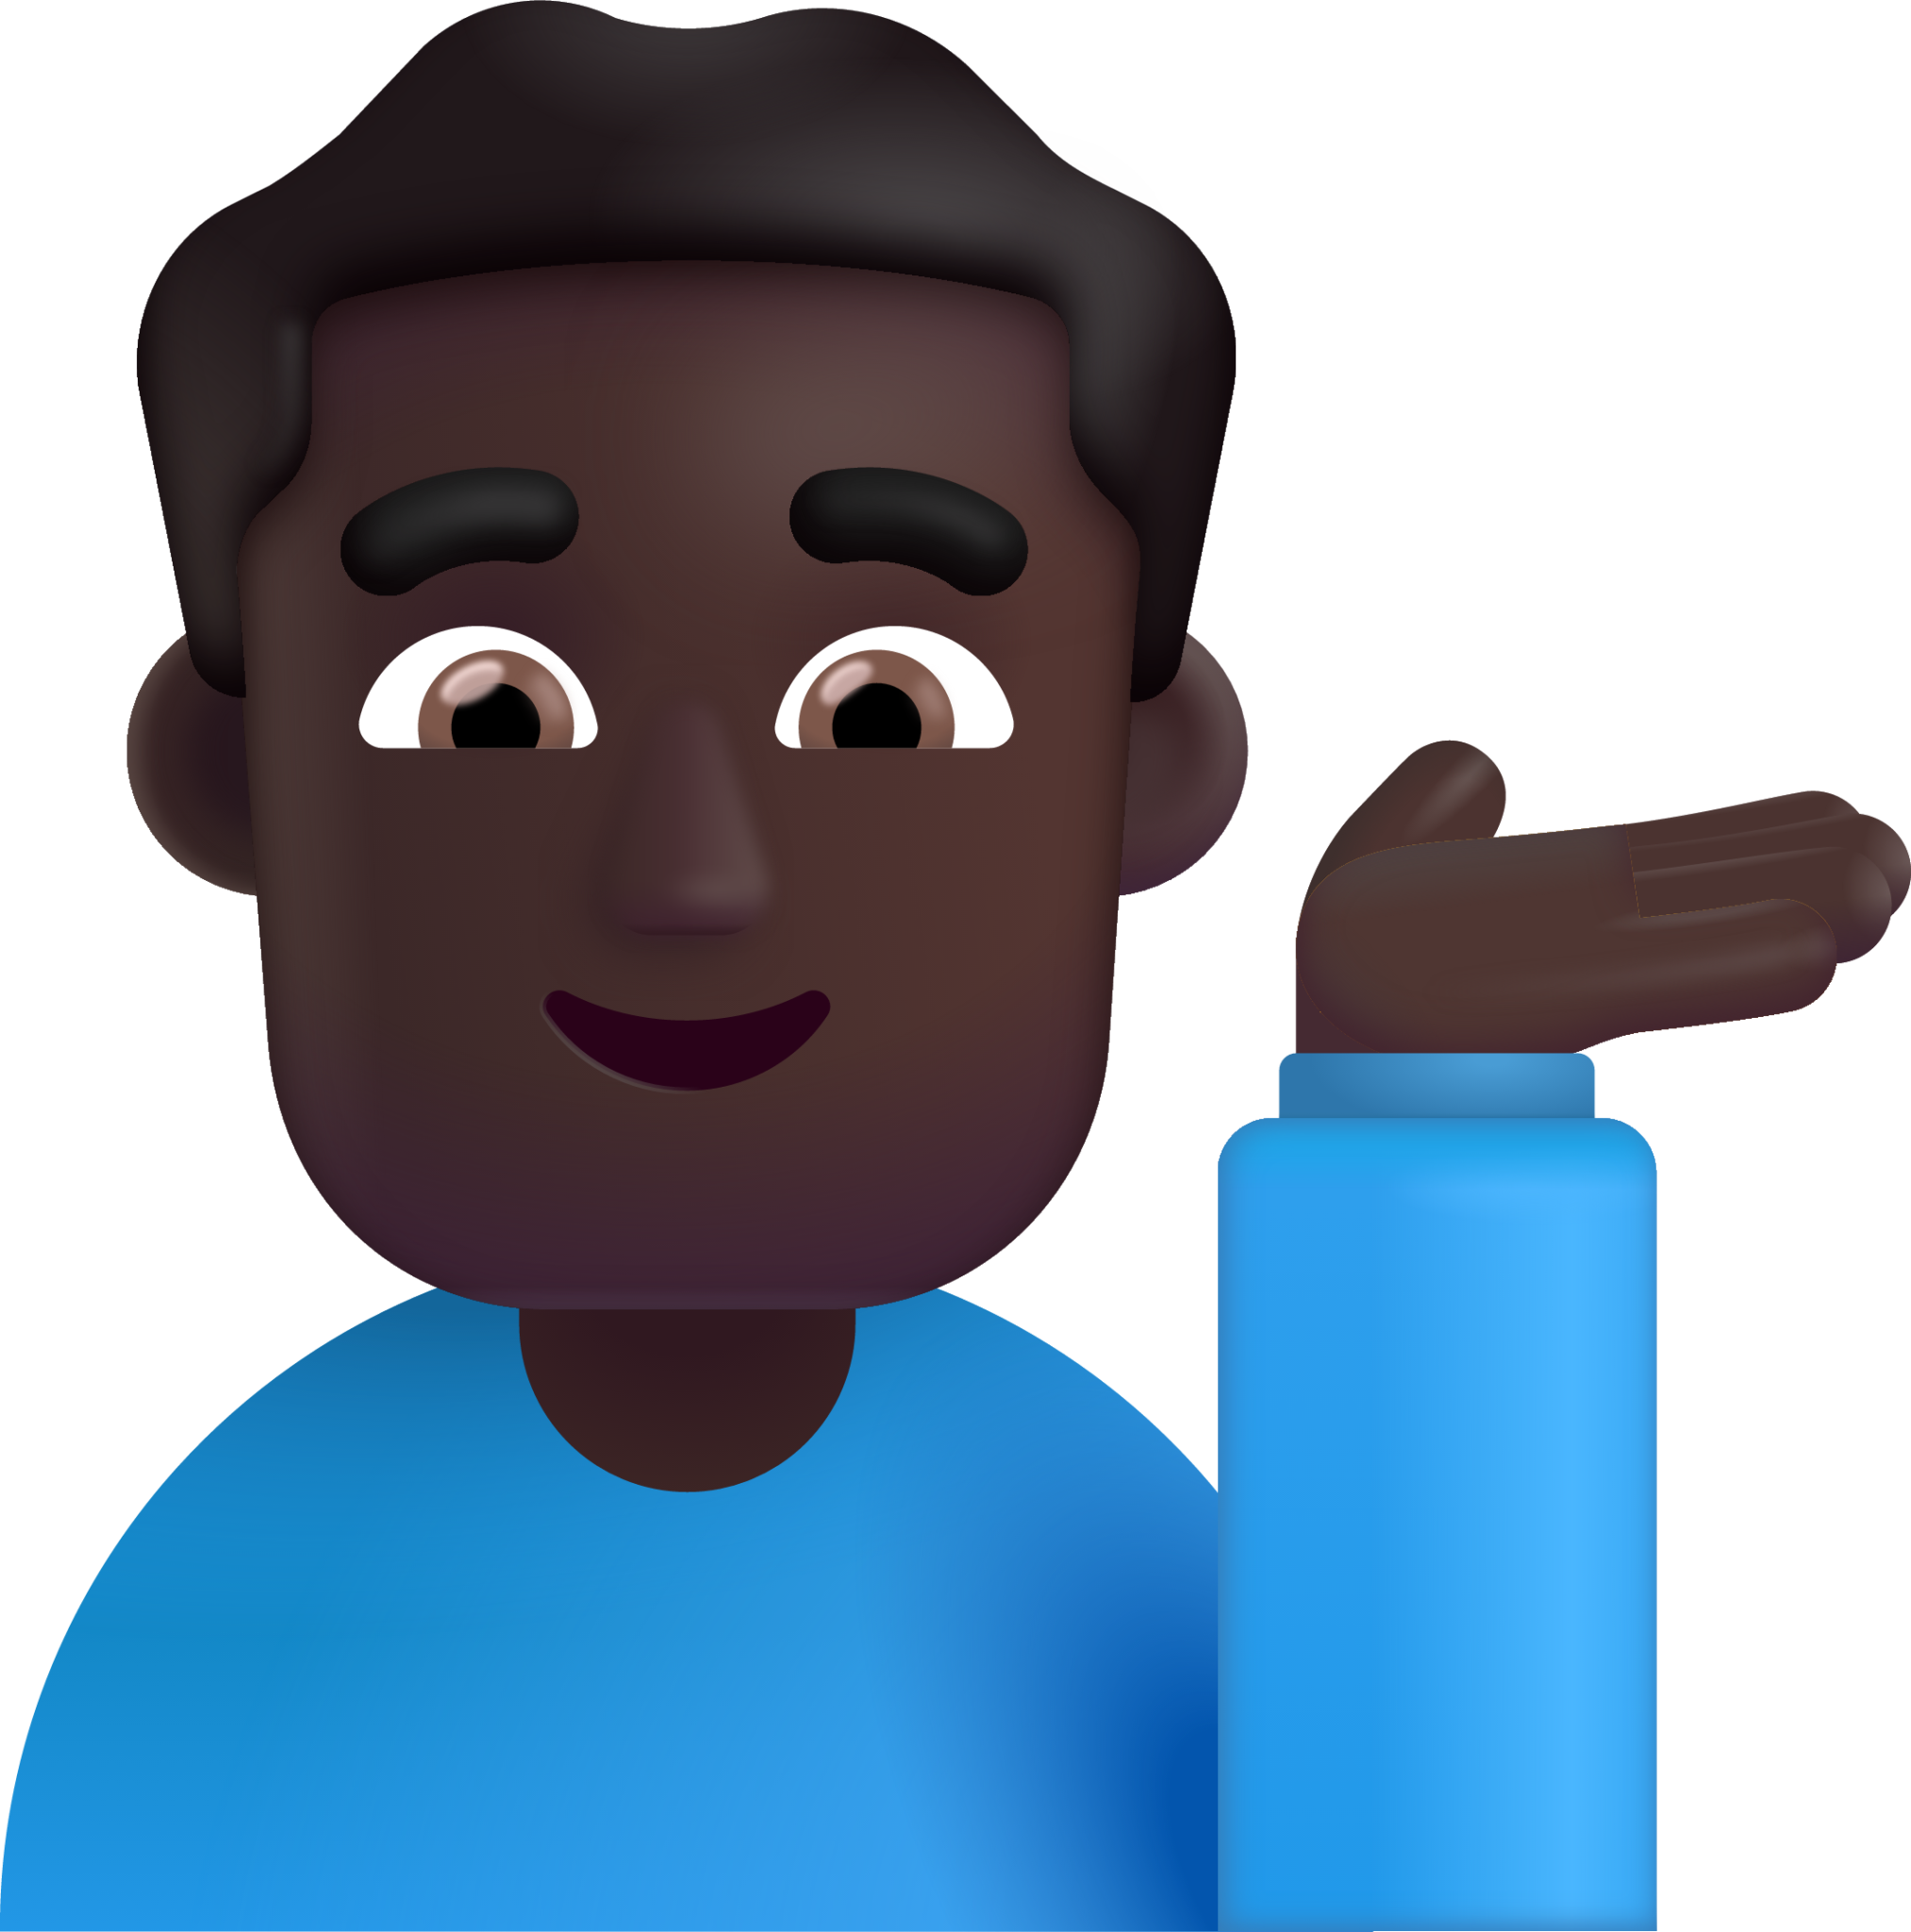 man tipping hand dark emoji